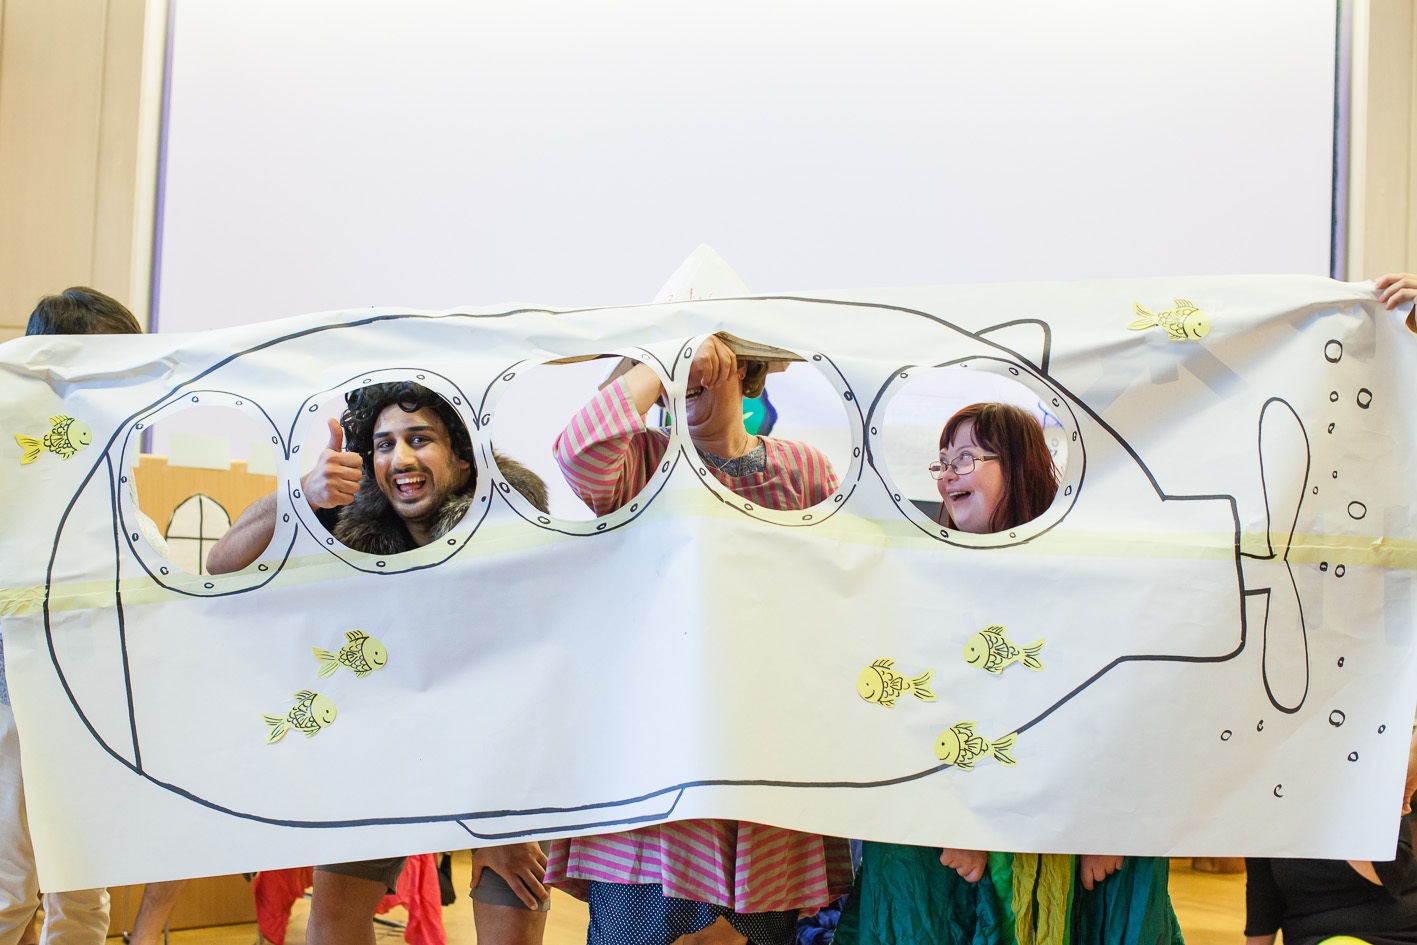 Bei unserem Theaterworkshop haben die Teilnehmerinnen viel Spaß. Drei Frauen halten ein großes Plakat. Auf das Papier wurde ein Uboot gezeichnet. Die Fenster von dem Uboot sind ausgeschnitten. Die Teilnehmerinnen spielen ein Theaterstück. Sie lachen und schauen durch die Luken.